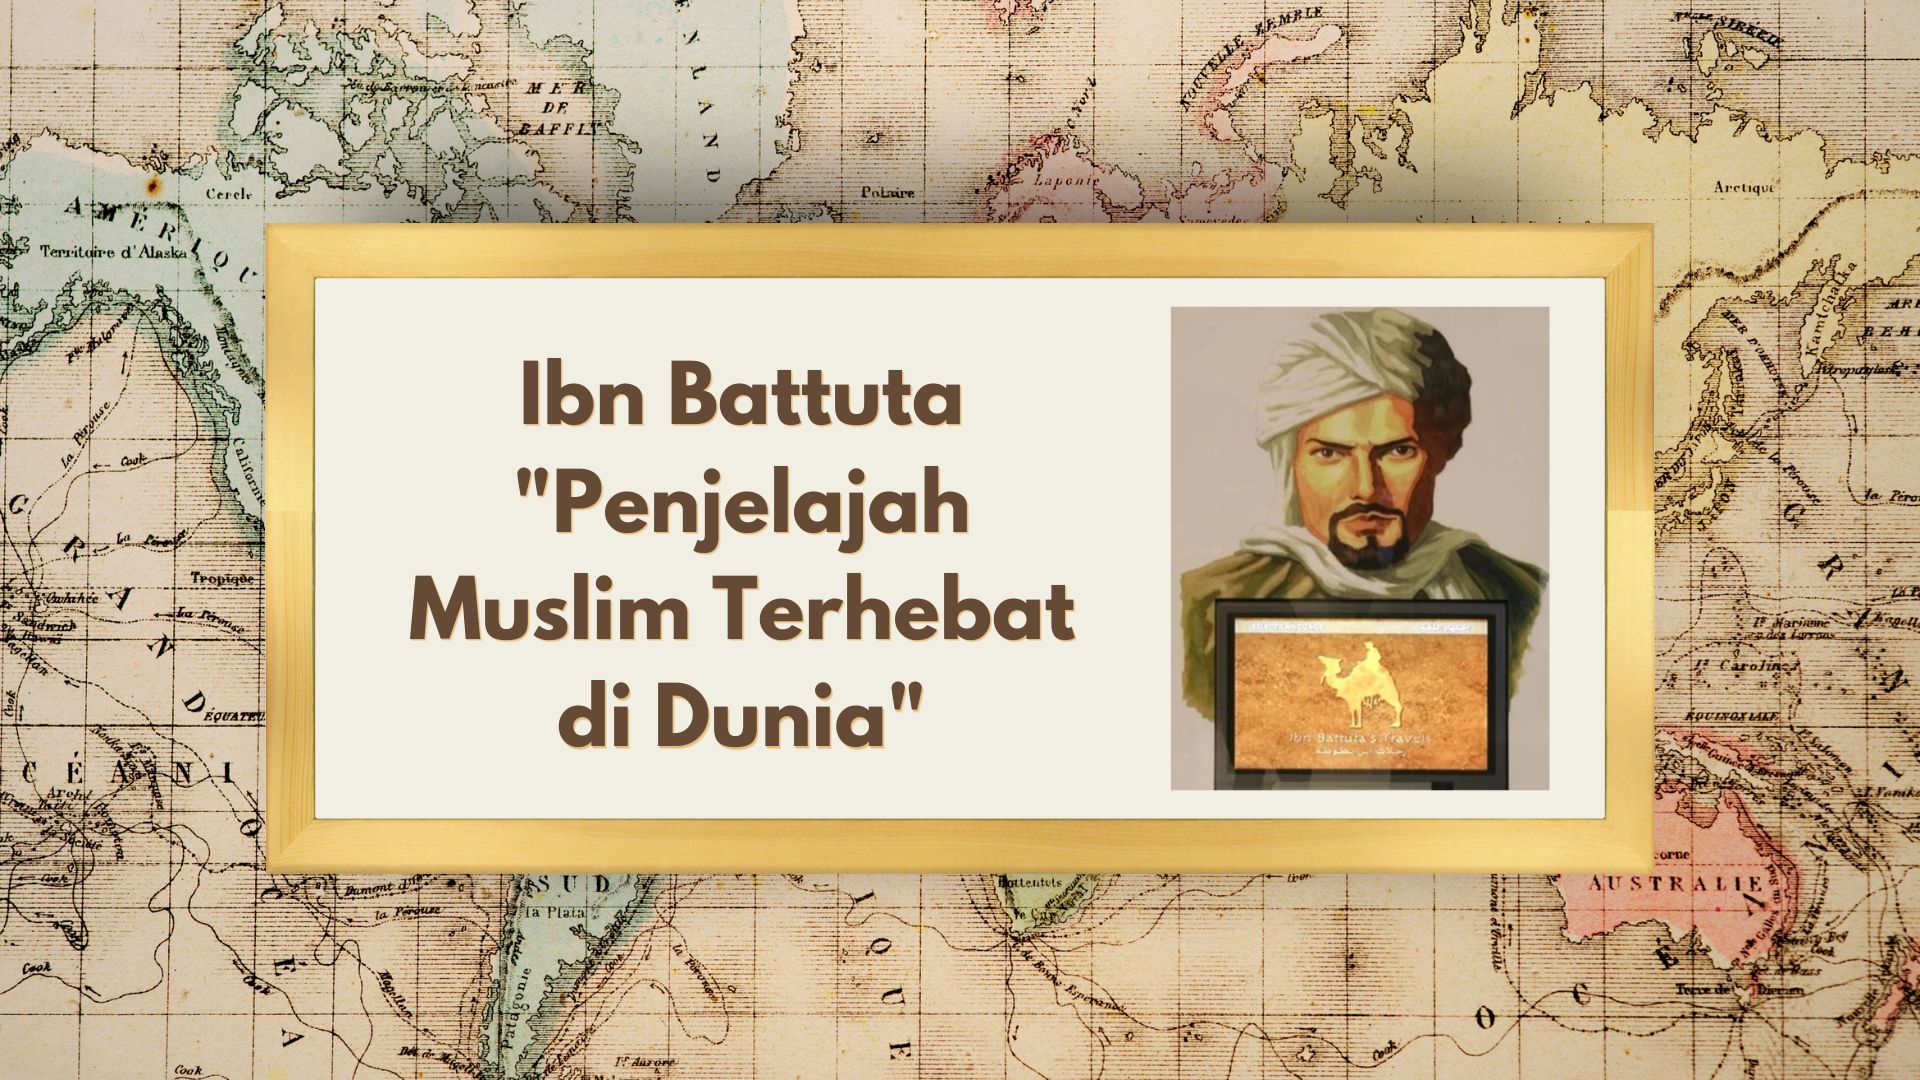 Ibn Battuta “Penjelajah Muslim Terhebat di Dunia”